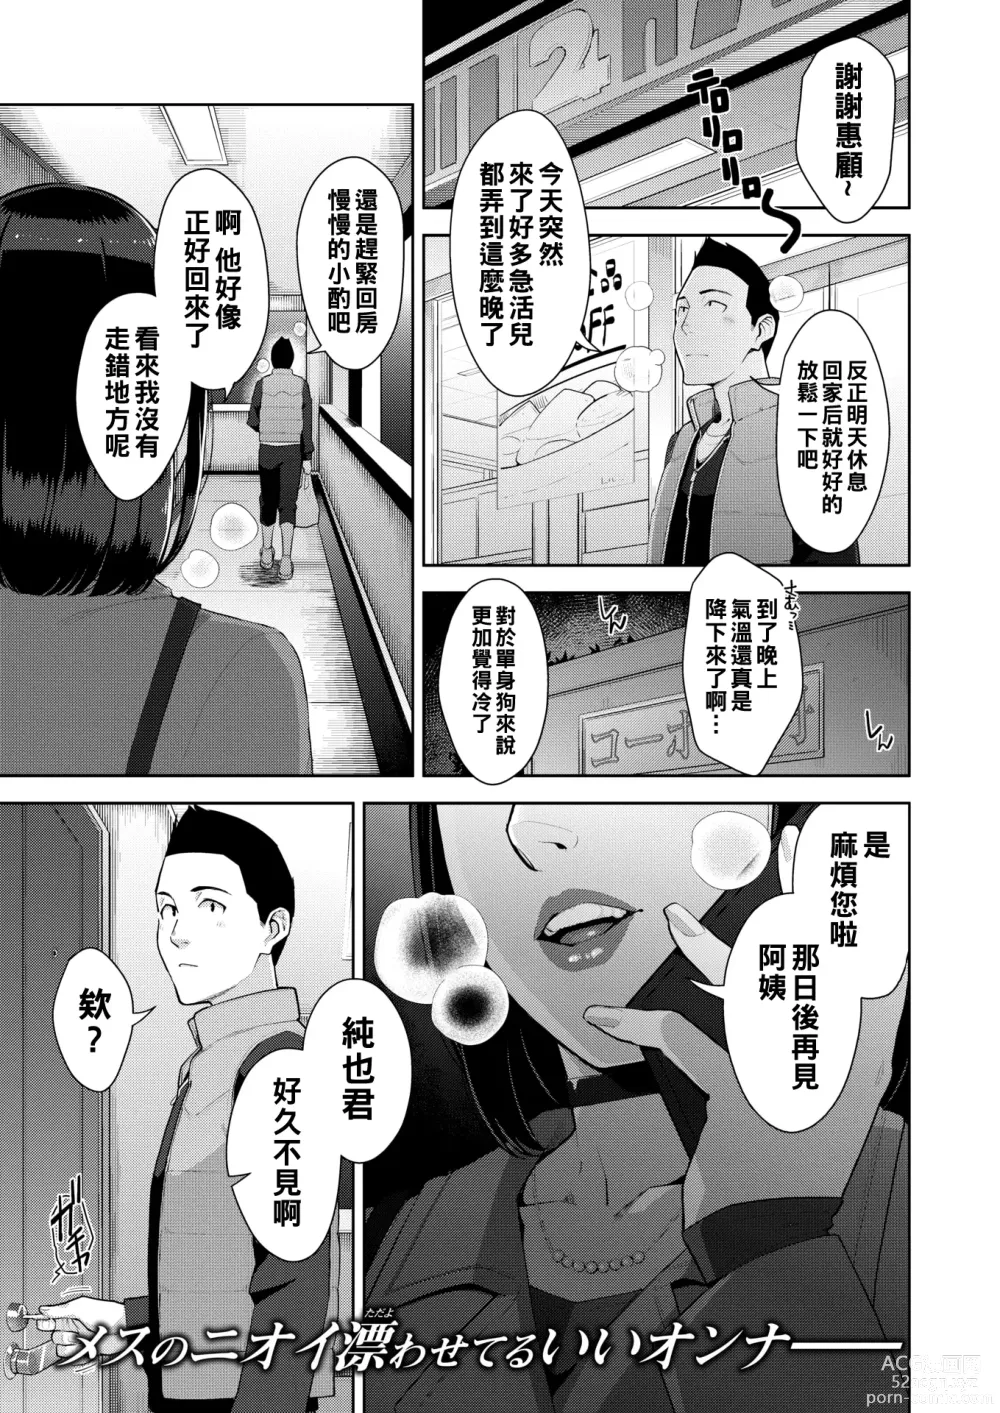 Page 1 of manga aitakute